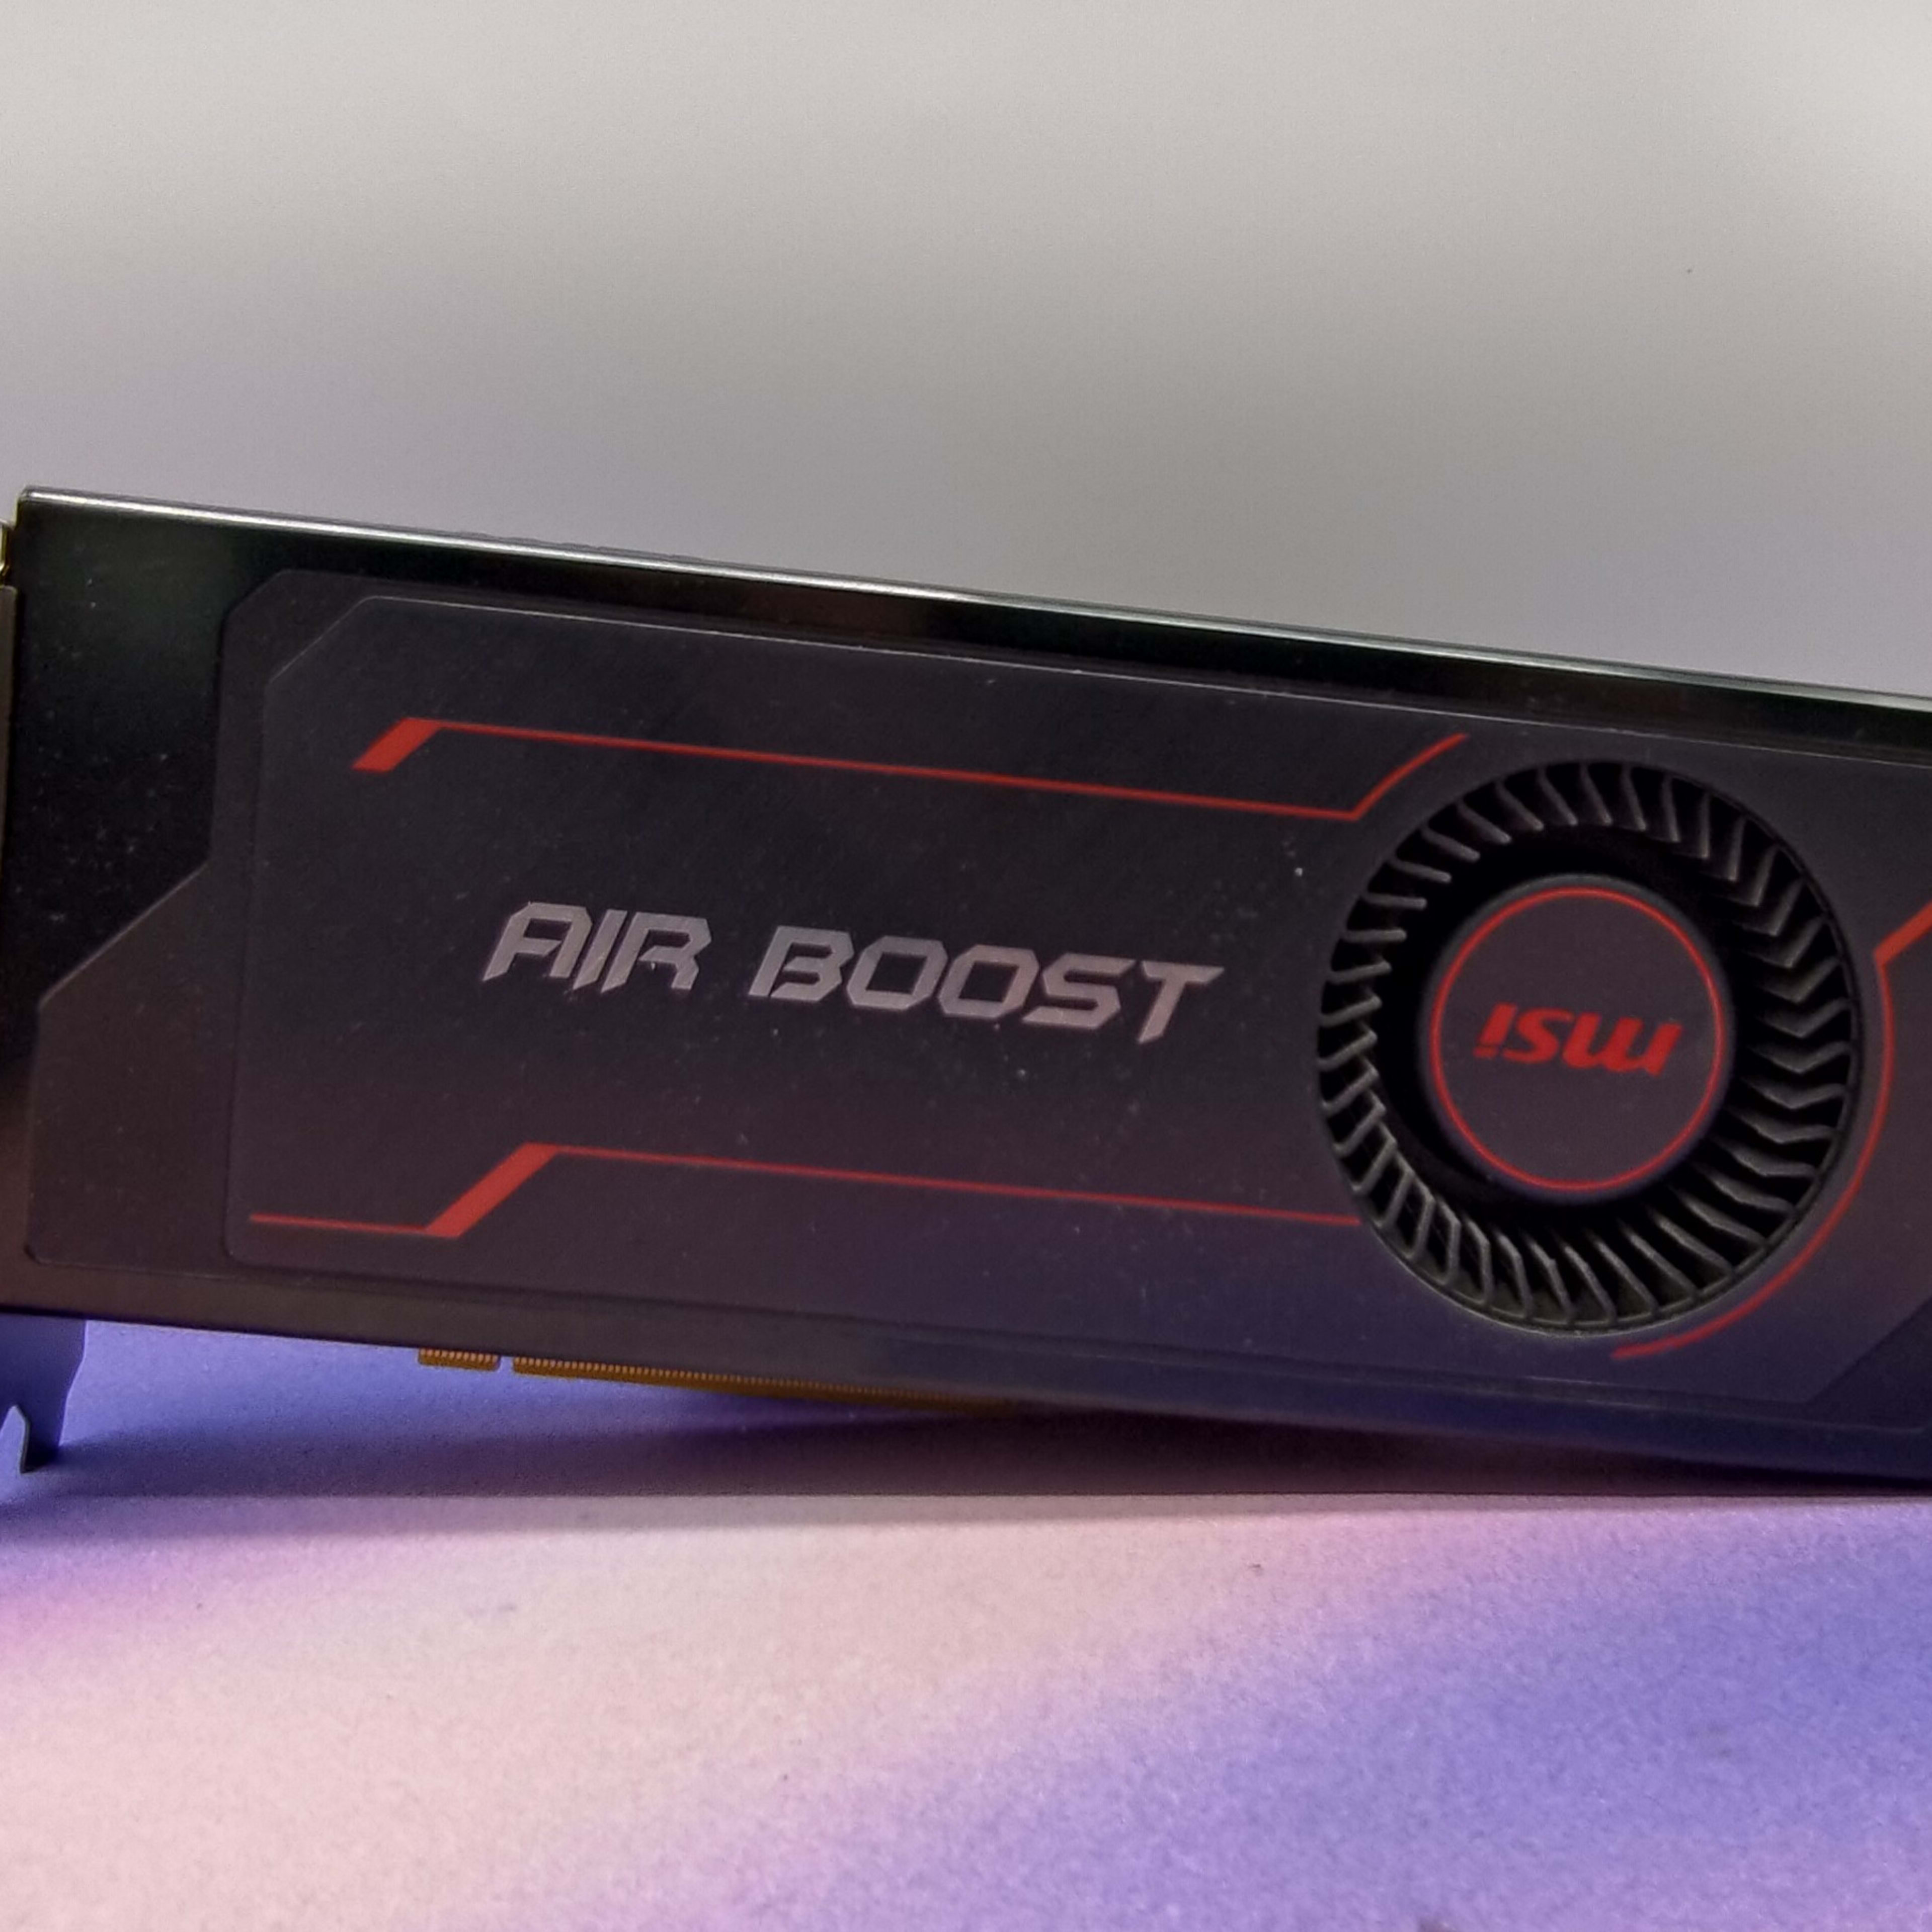 MSI RX Vega 64 Air Boost